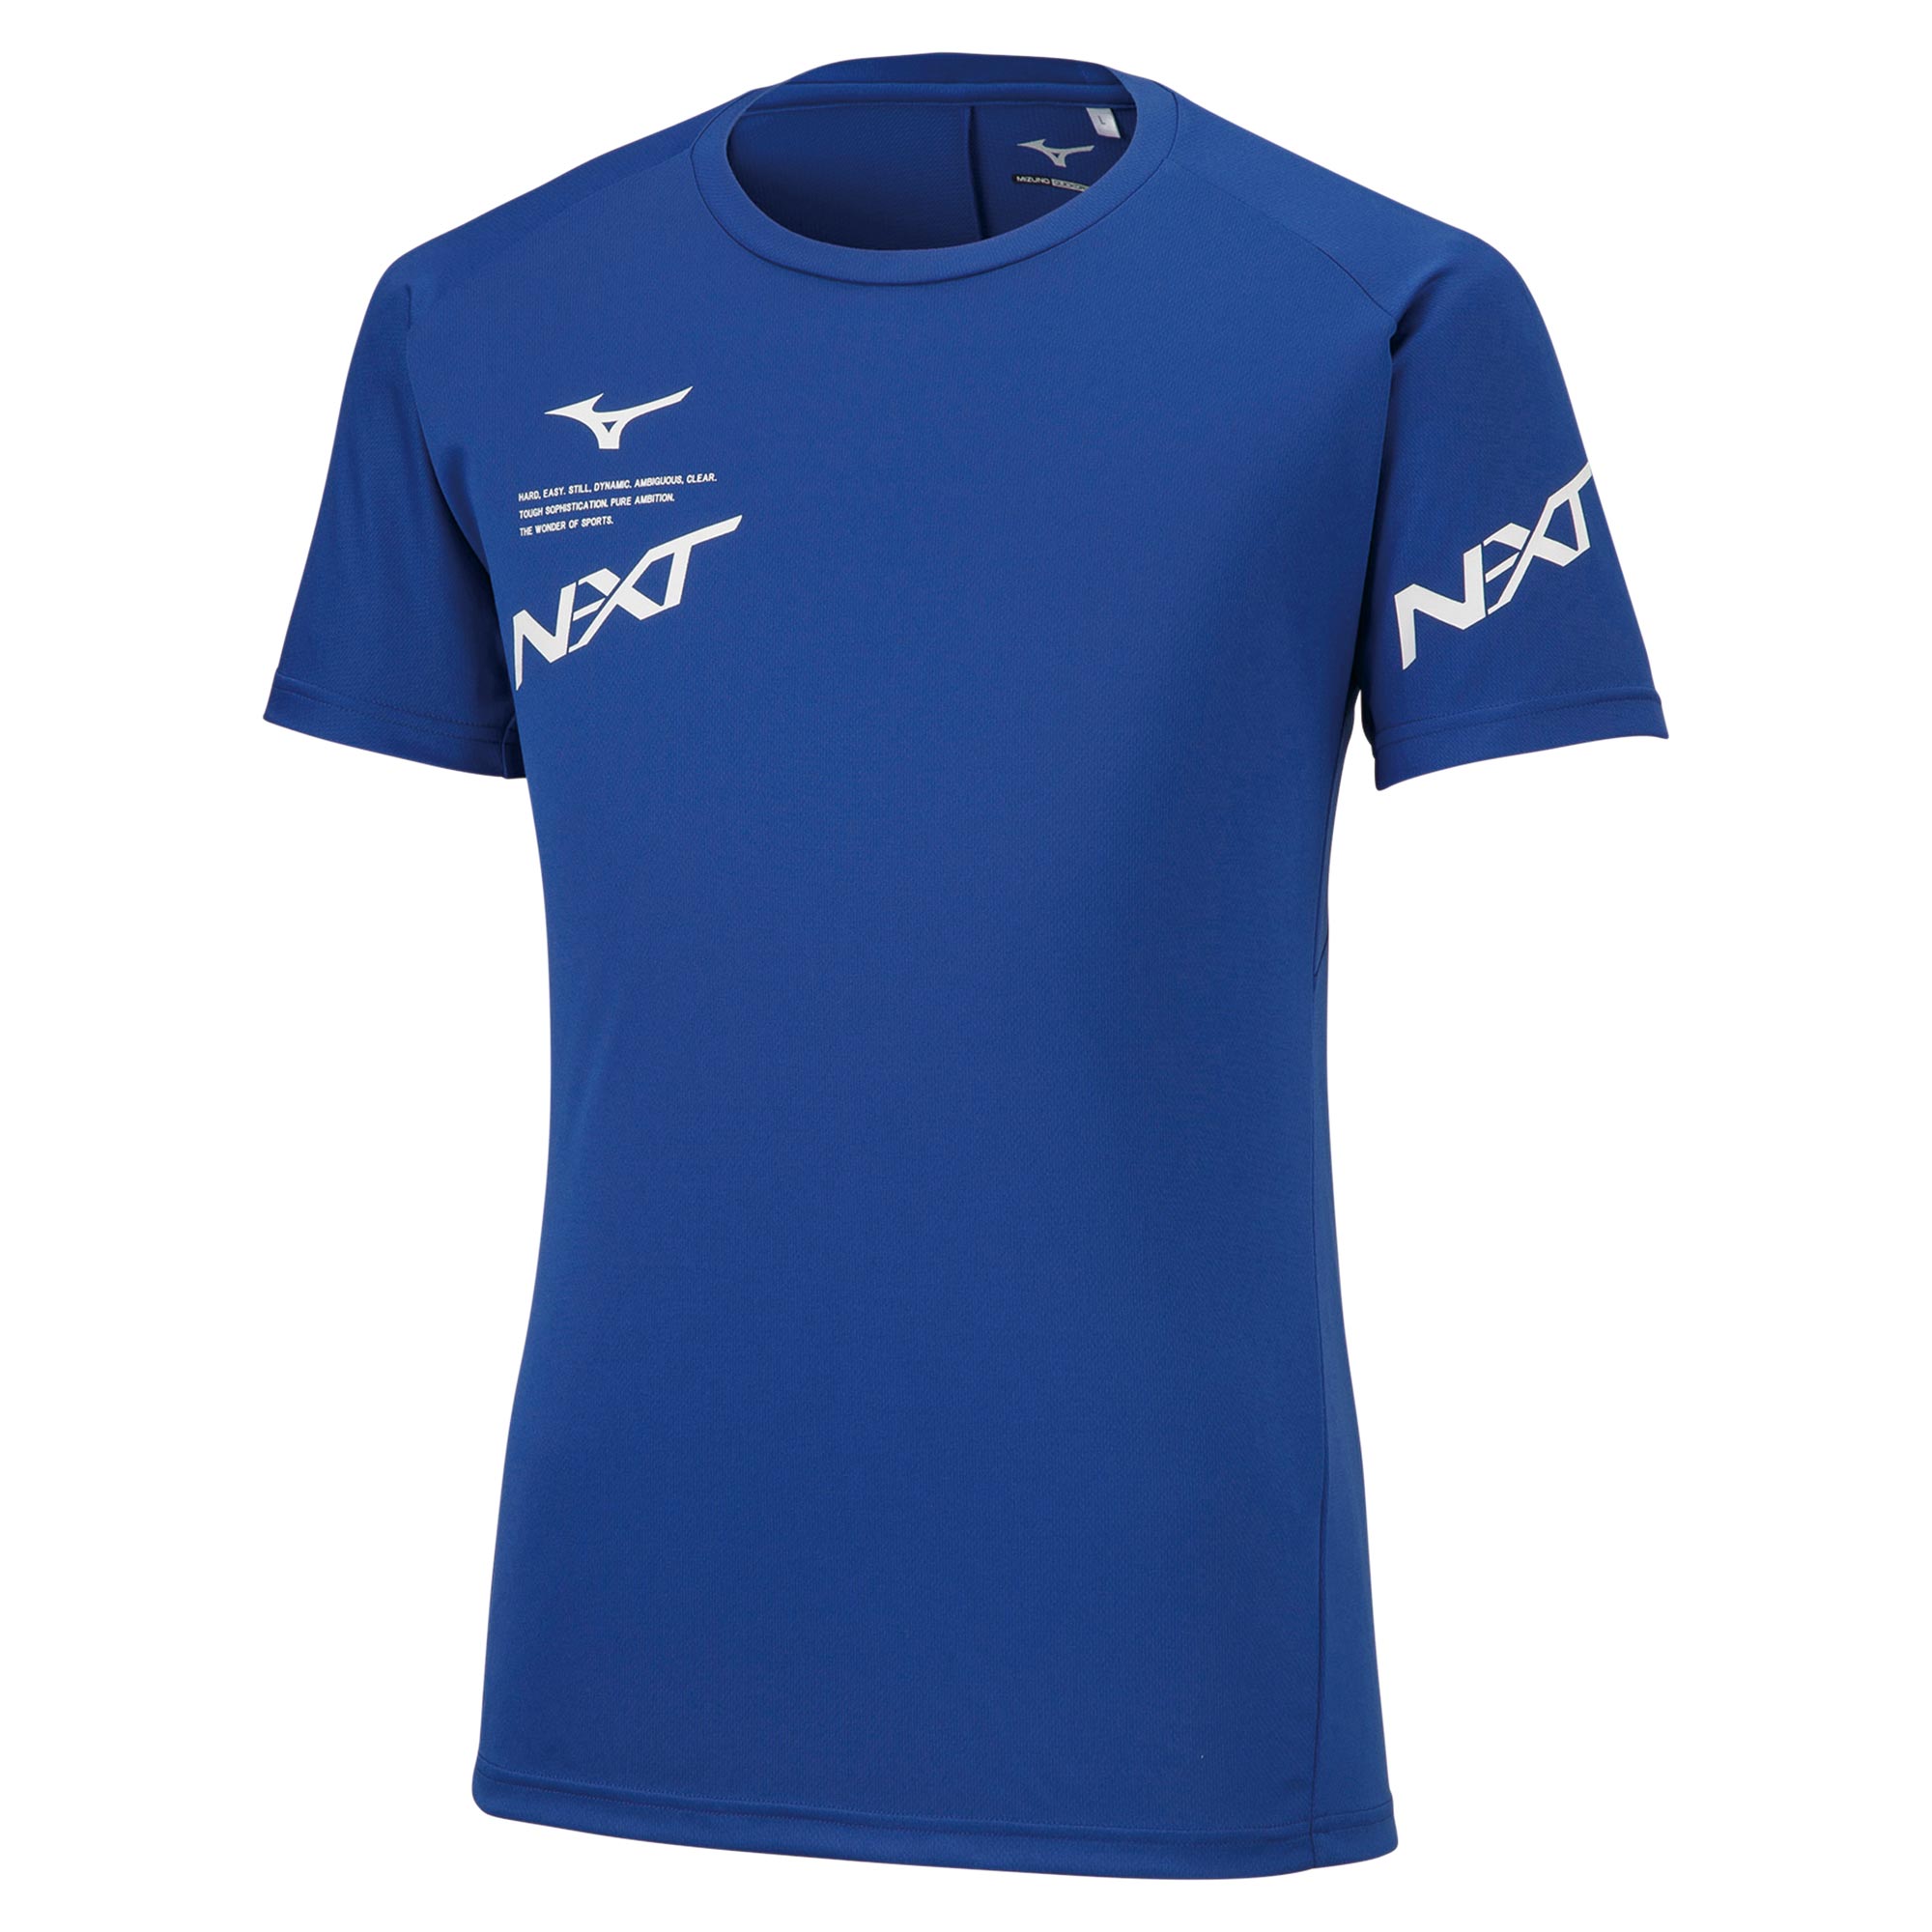 N-XTプラクティスシャツ(半袖)(バレーボール)[ユニセックス]|V2MA2007|ウエア|バレーボール|ミズノ公式オンライン